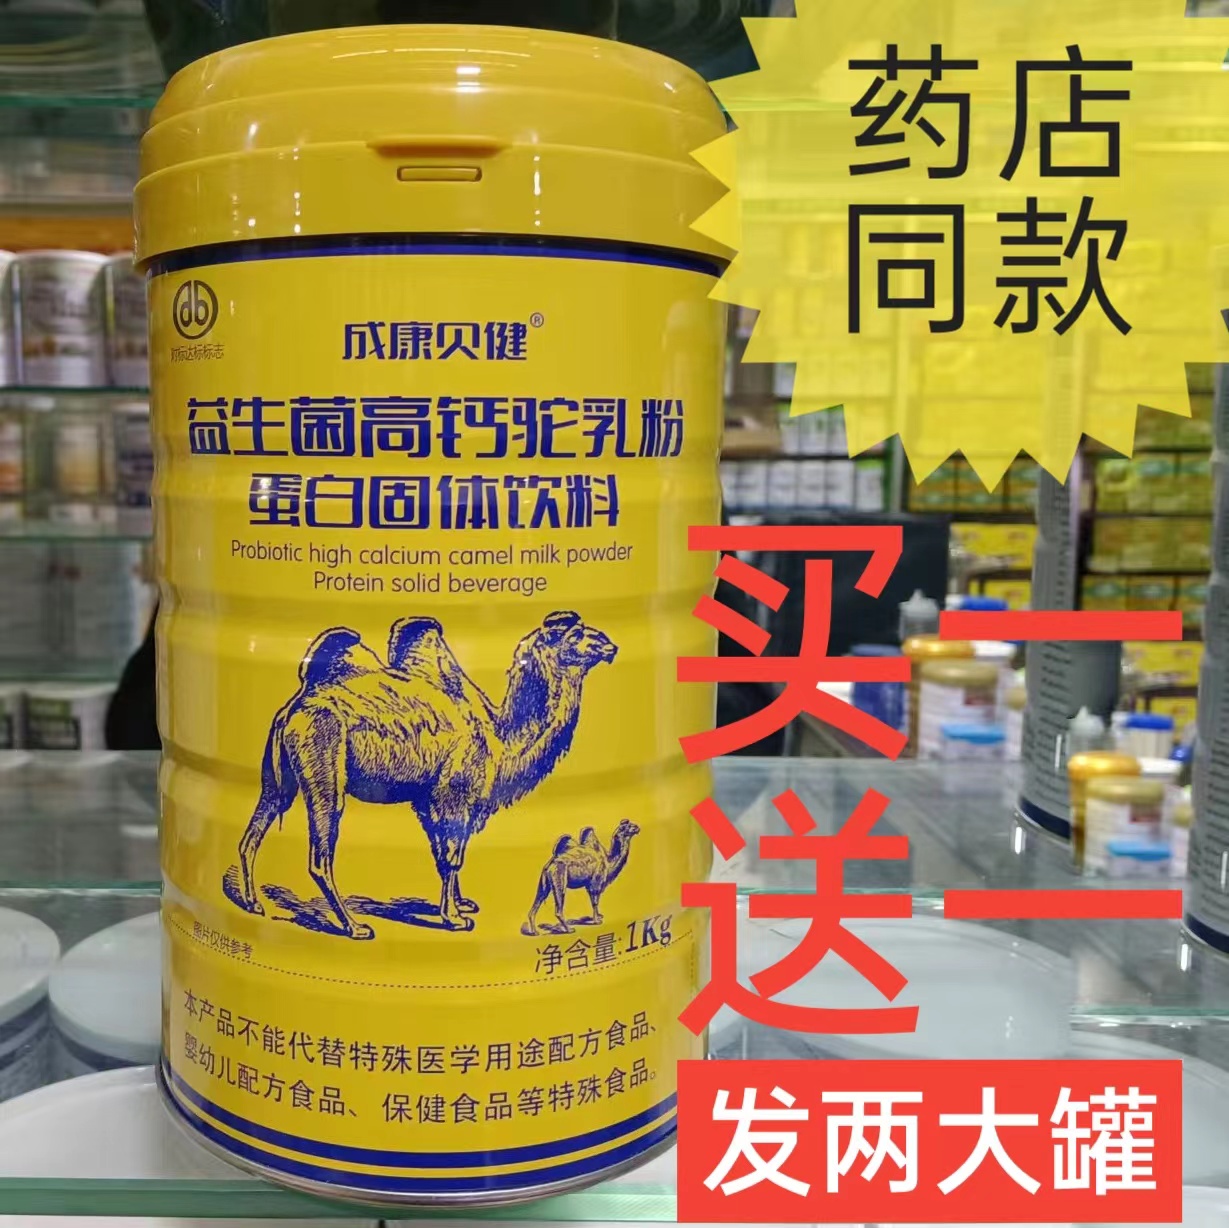 益生菌高钙骆驼奶粉蛋白固体饮料中年人营养品补品送礼长辈男女